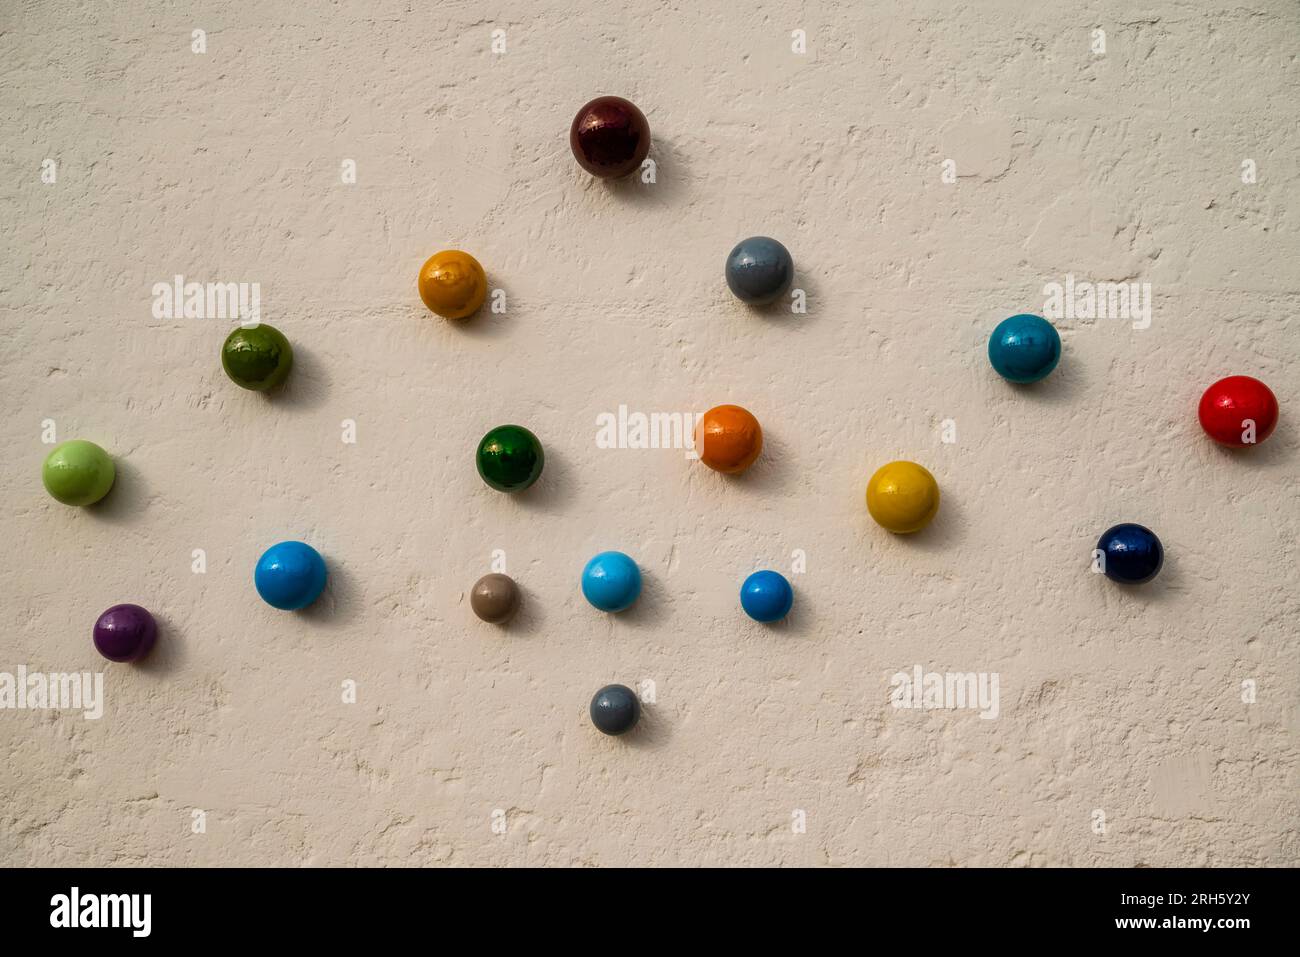 Divers marbres ronds en céramique colorés exposés sur un mur à Grottaglie, Italie Banque D'Images